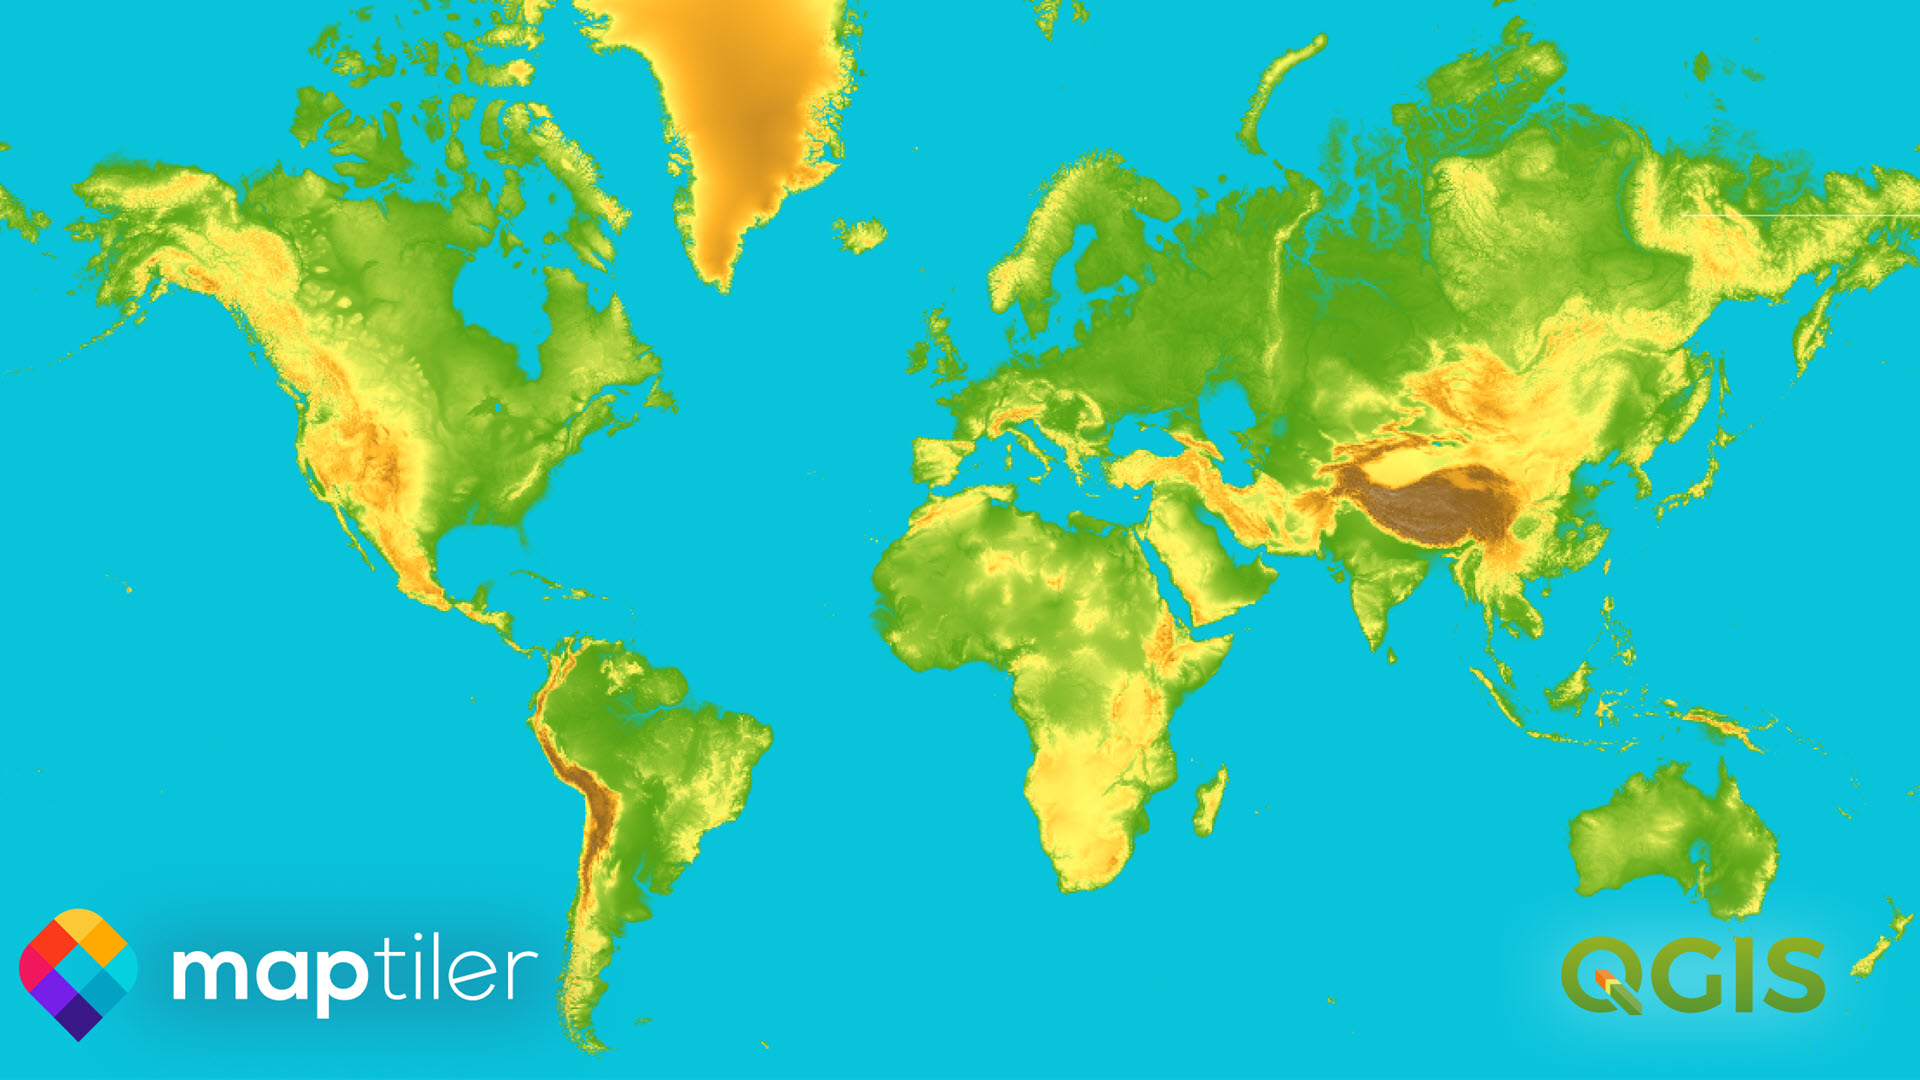 Mappa di base del terreno globale per l'immagine QGIS